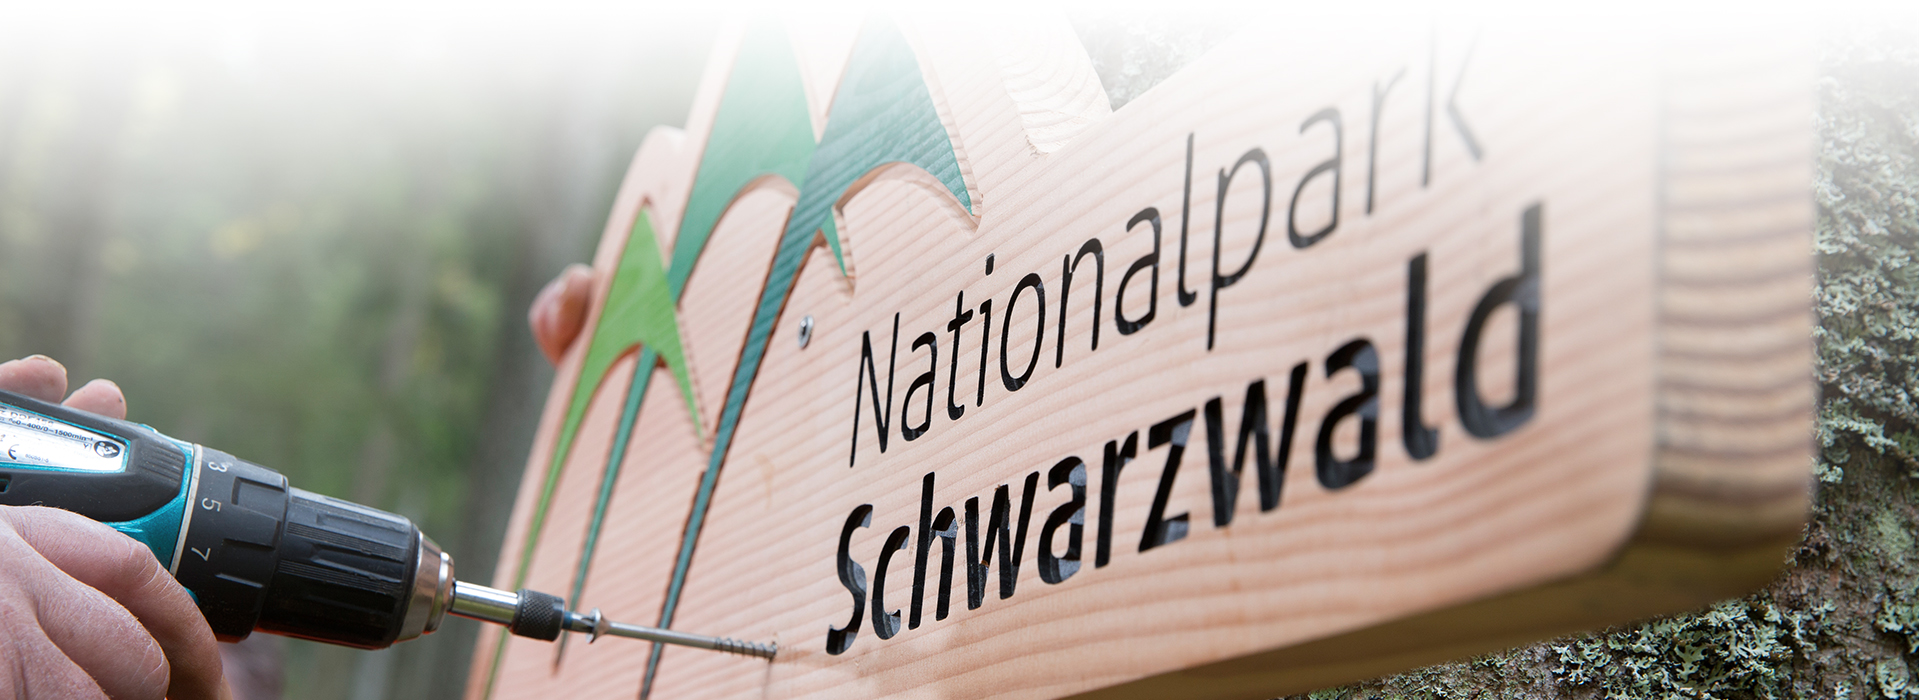 Ein hölzernes Nationalparkschild wird montiert. Auf dem Schild steht mit schwarzen Buchstaben "Nationalpark Schwarzwald", daneben ist das Logo abgebildet.